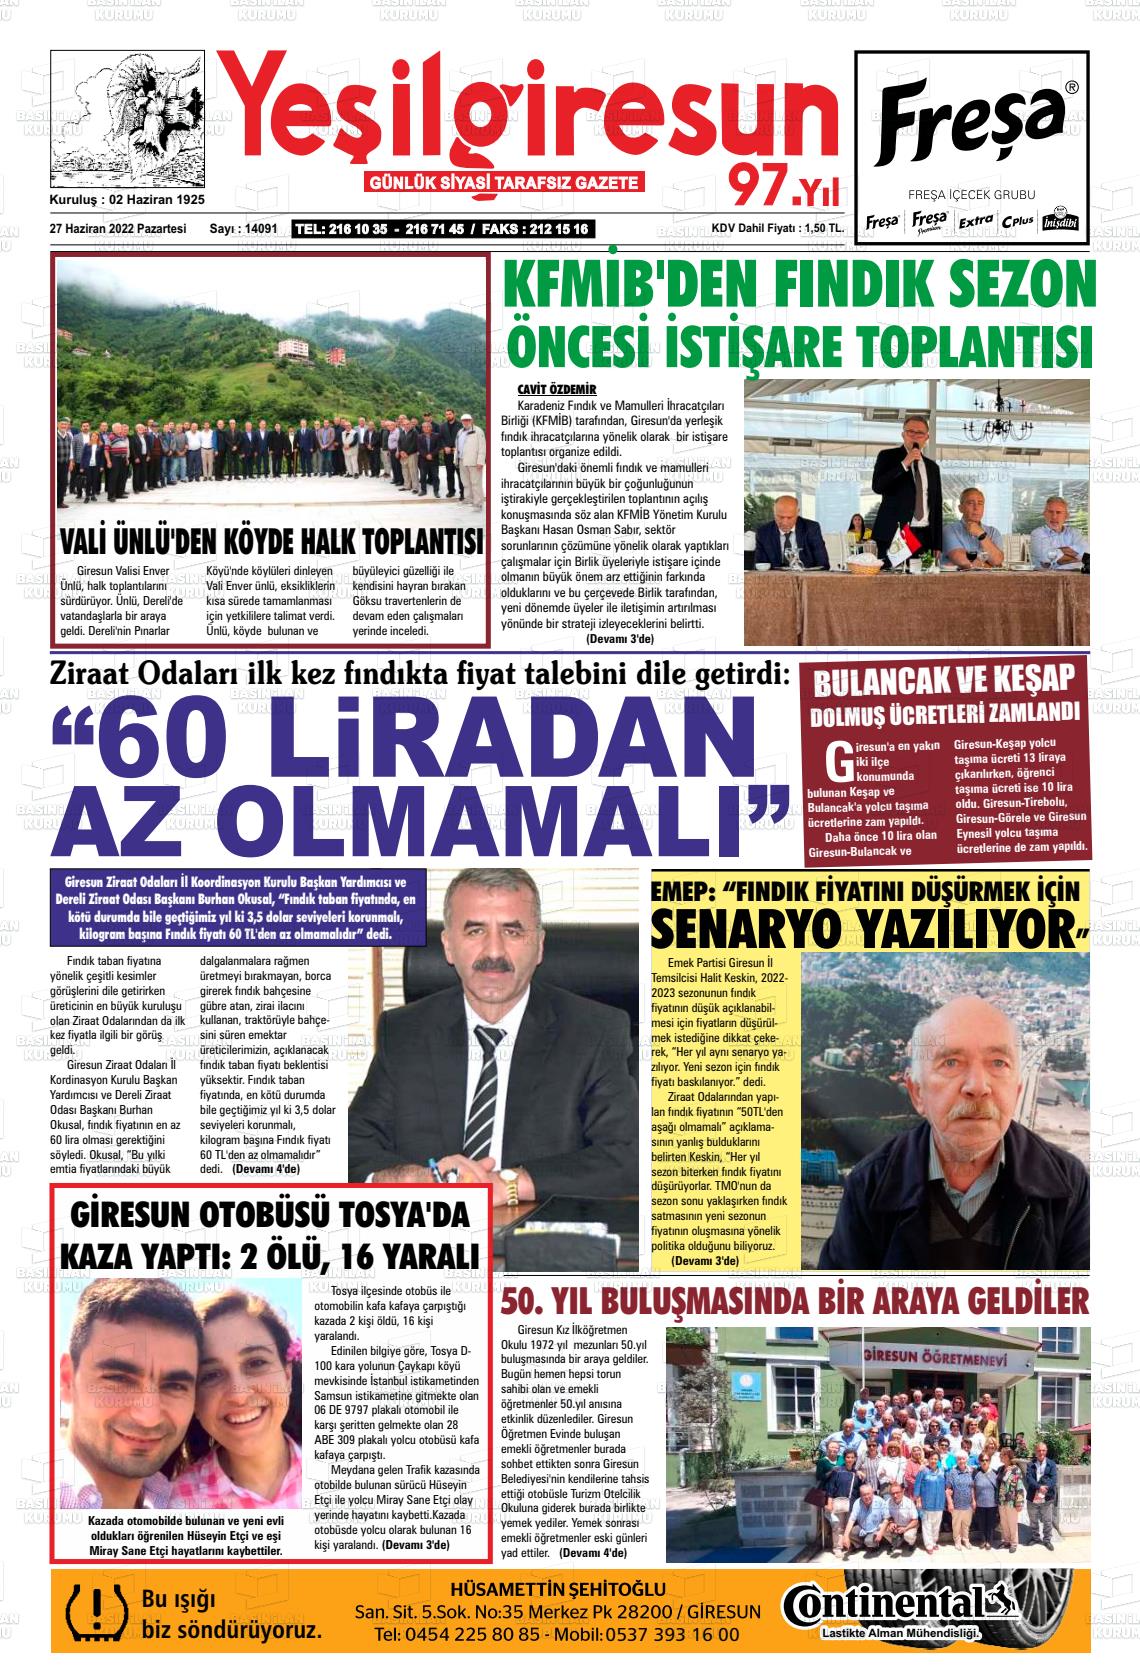 27 Haziran 2022 Yeşil Giresun Gazete Manşeti